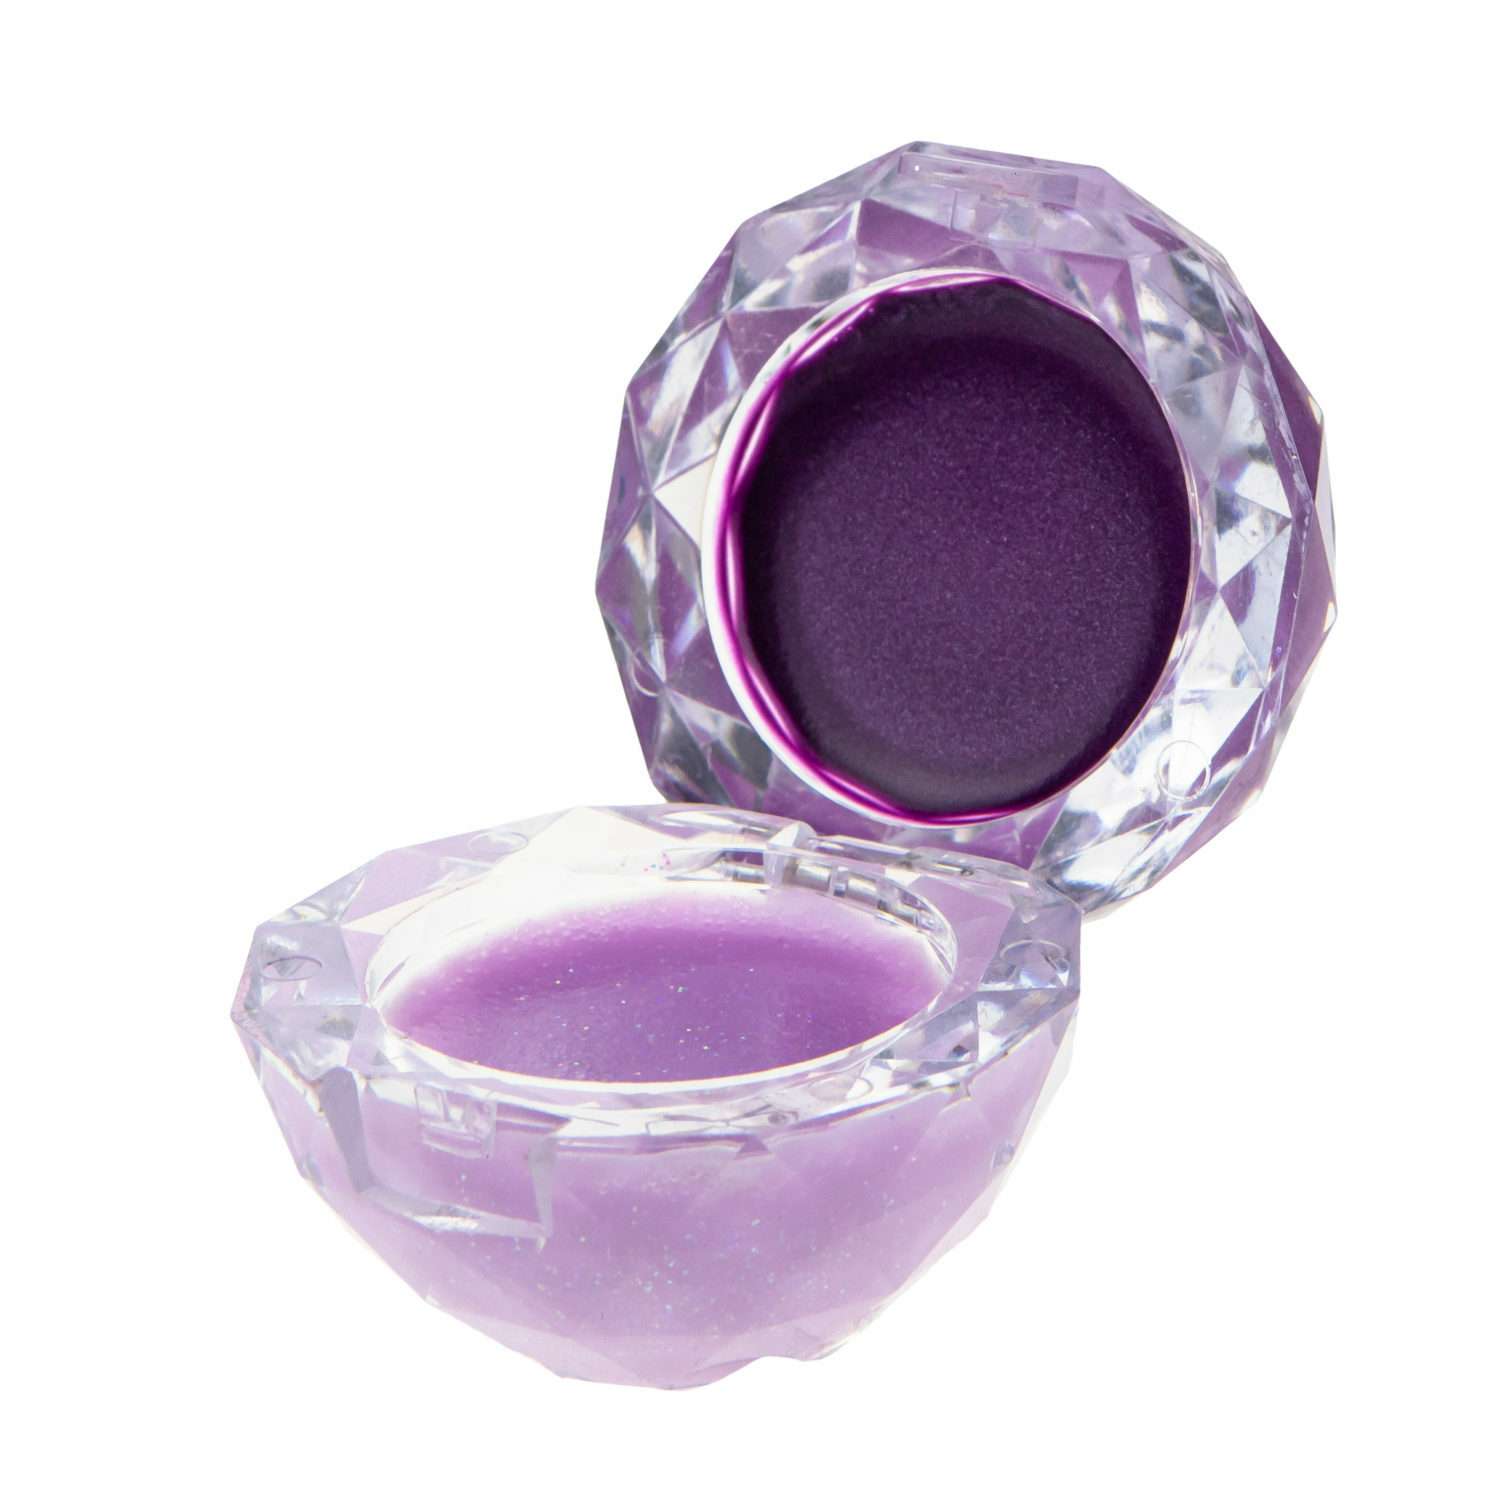 Блеск для губ Lukky Даймонд 2 в 1 цвет фиолетовый и нежно-сиреневый - фото 1